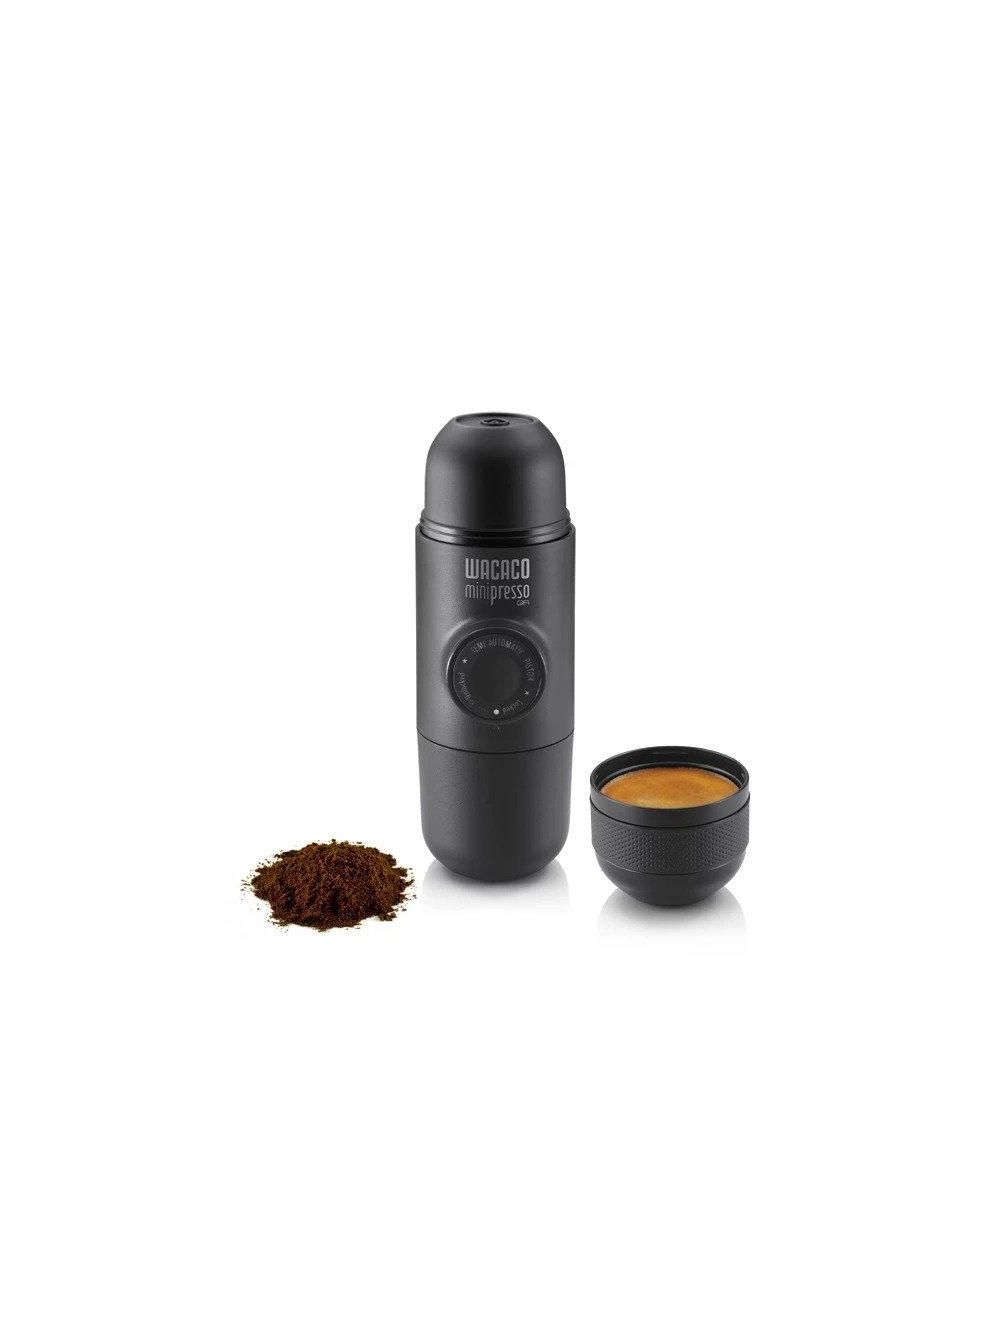 Wacaco Minipresso Hand Powered Espresso Machine for Ground Coffee-WC-MINIP-GR